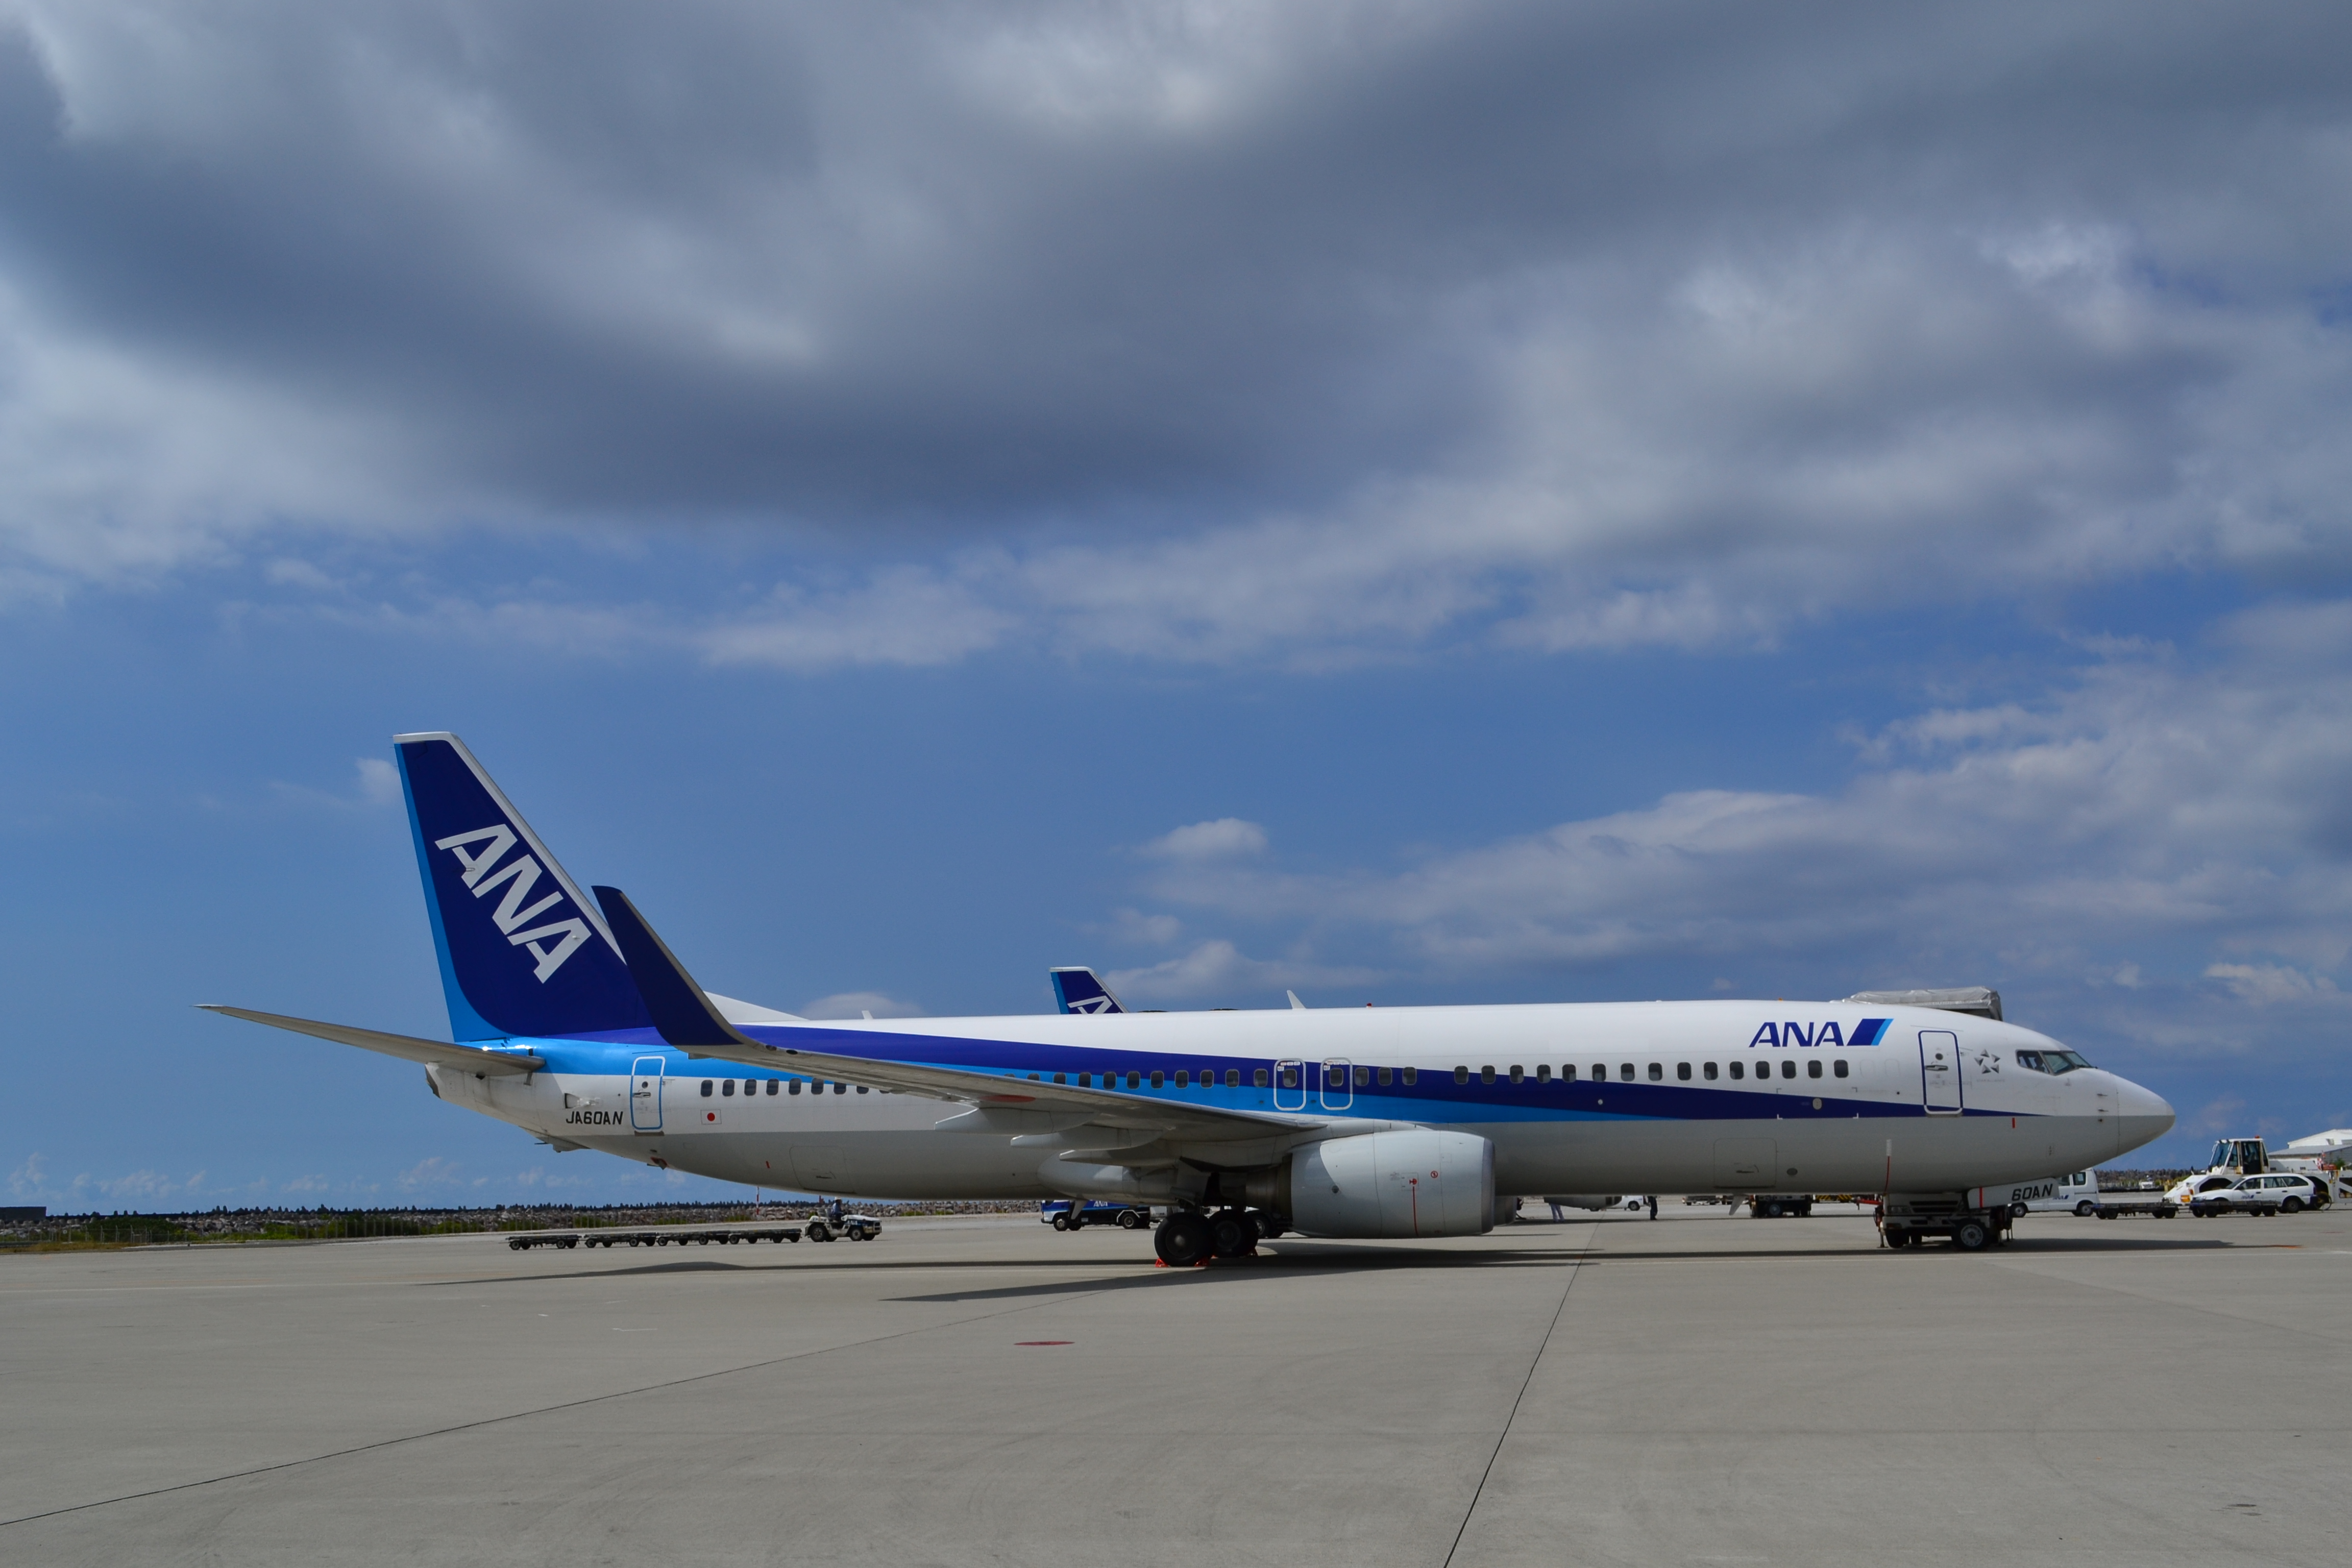 Nippon airways - ana photo